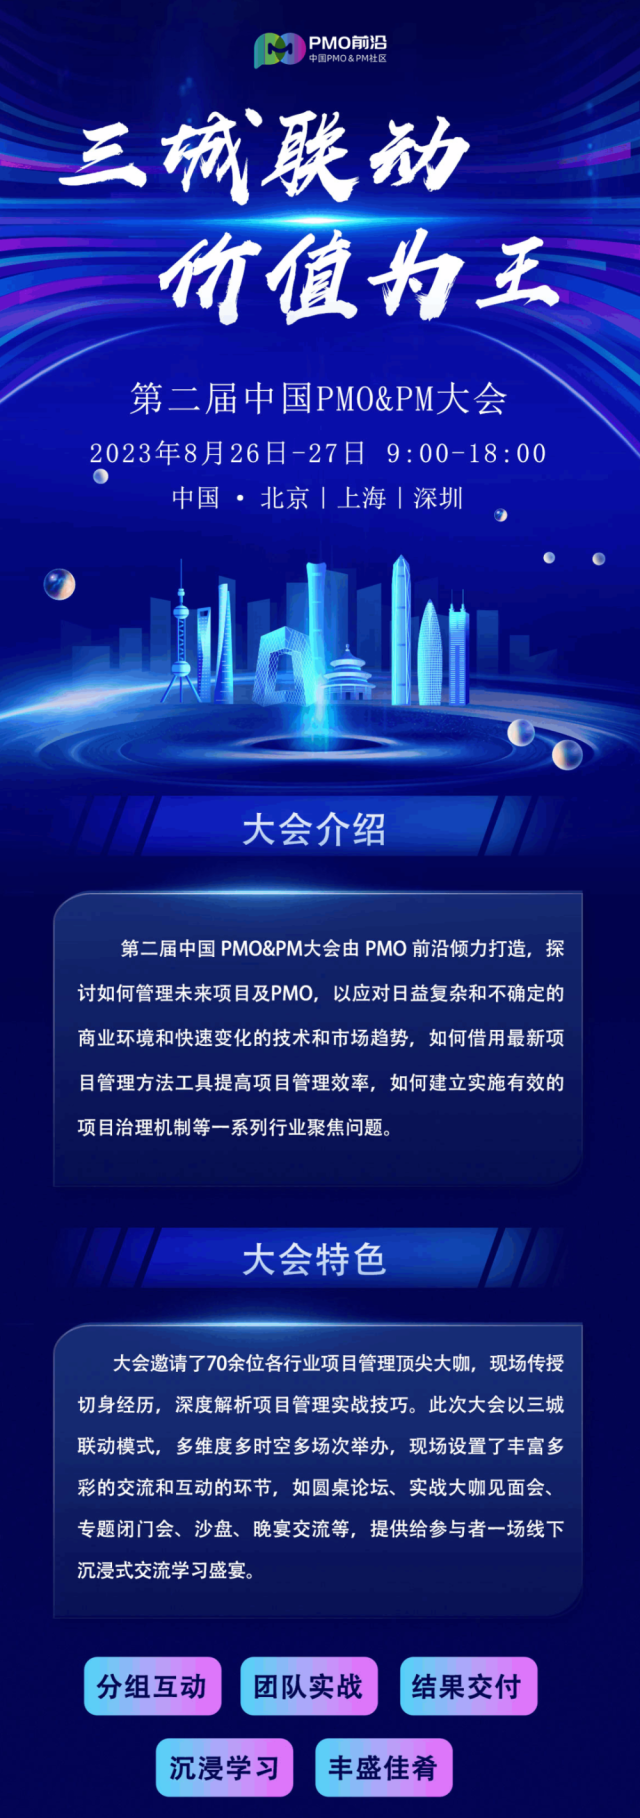 大咖来袭！中国PMO&PM大会议程隆重发布，三城联动